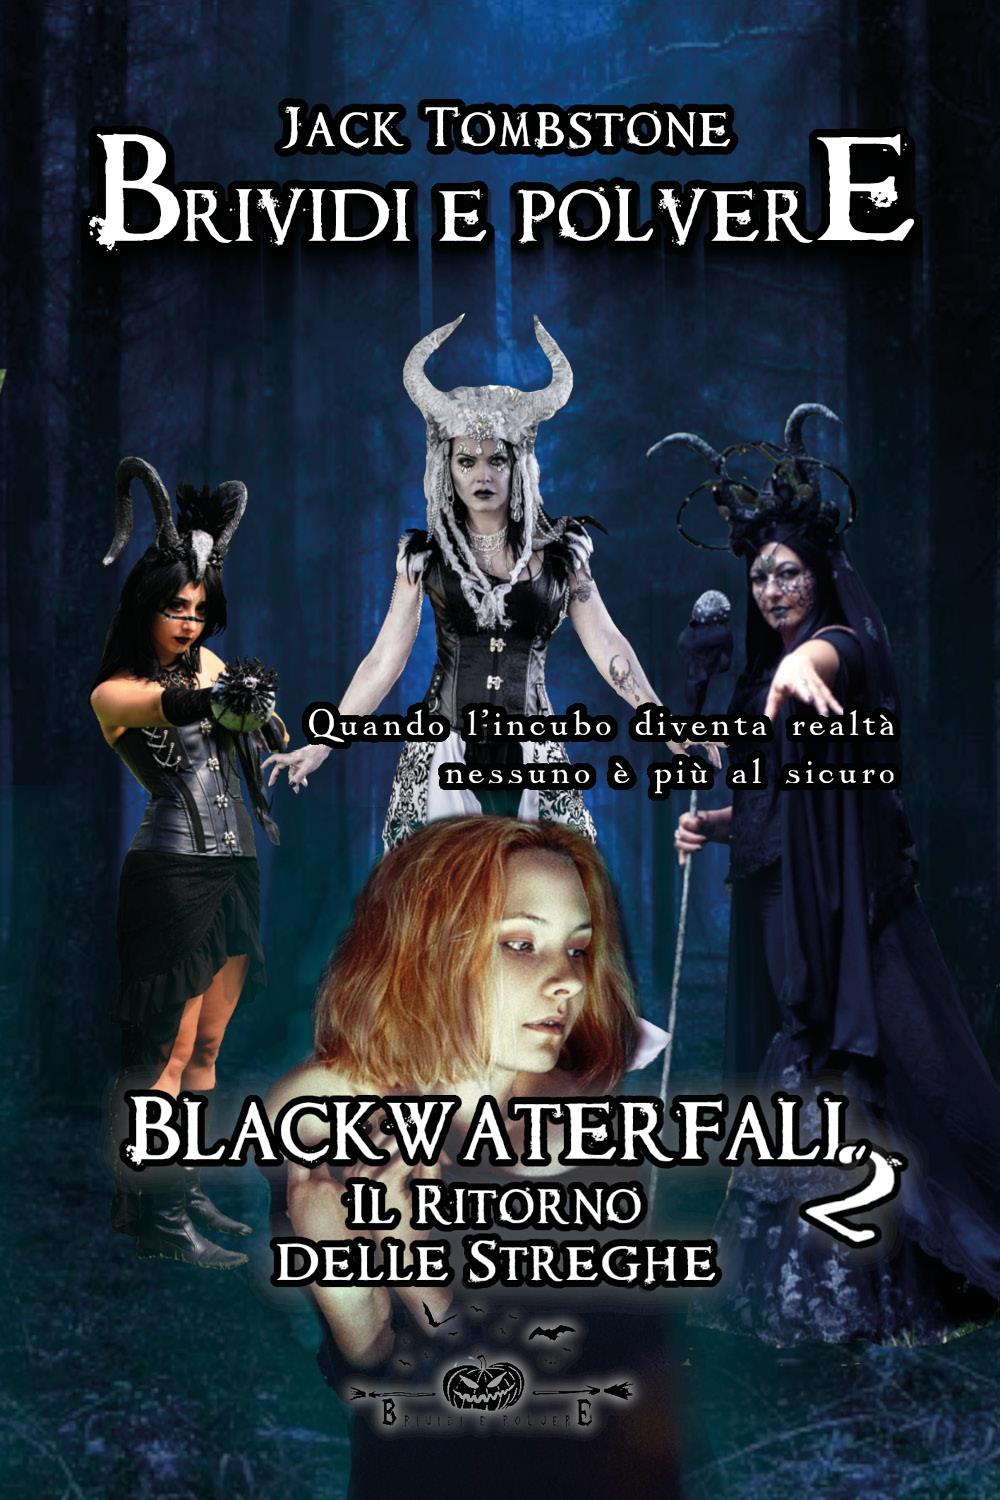 Blackwaterfall - Il Ritorno Delle Streghe (Brividi e Polvere 3)